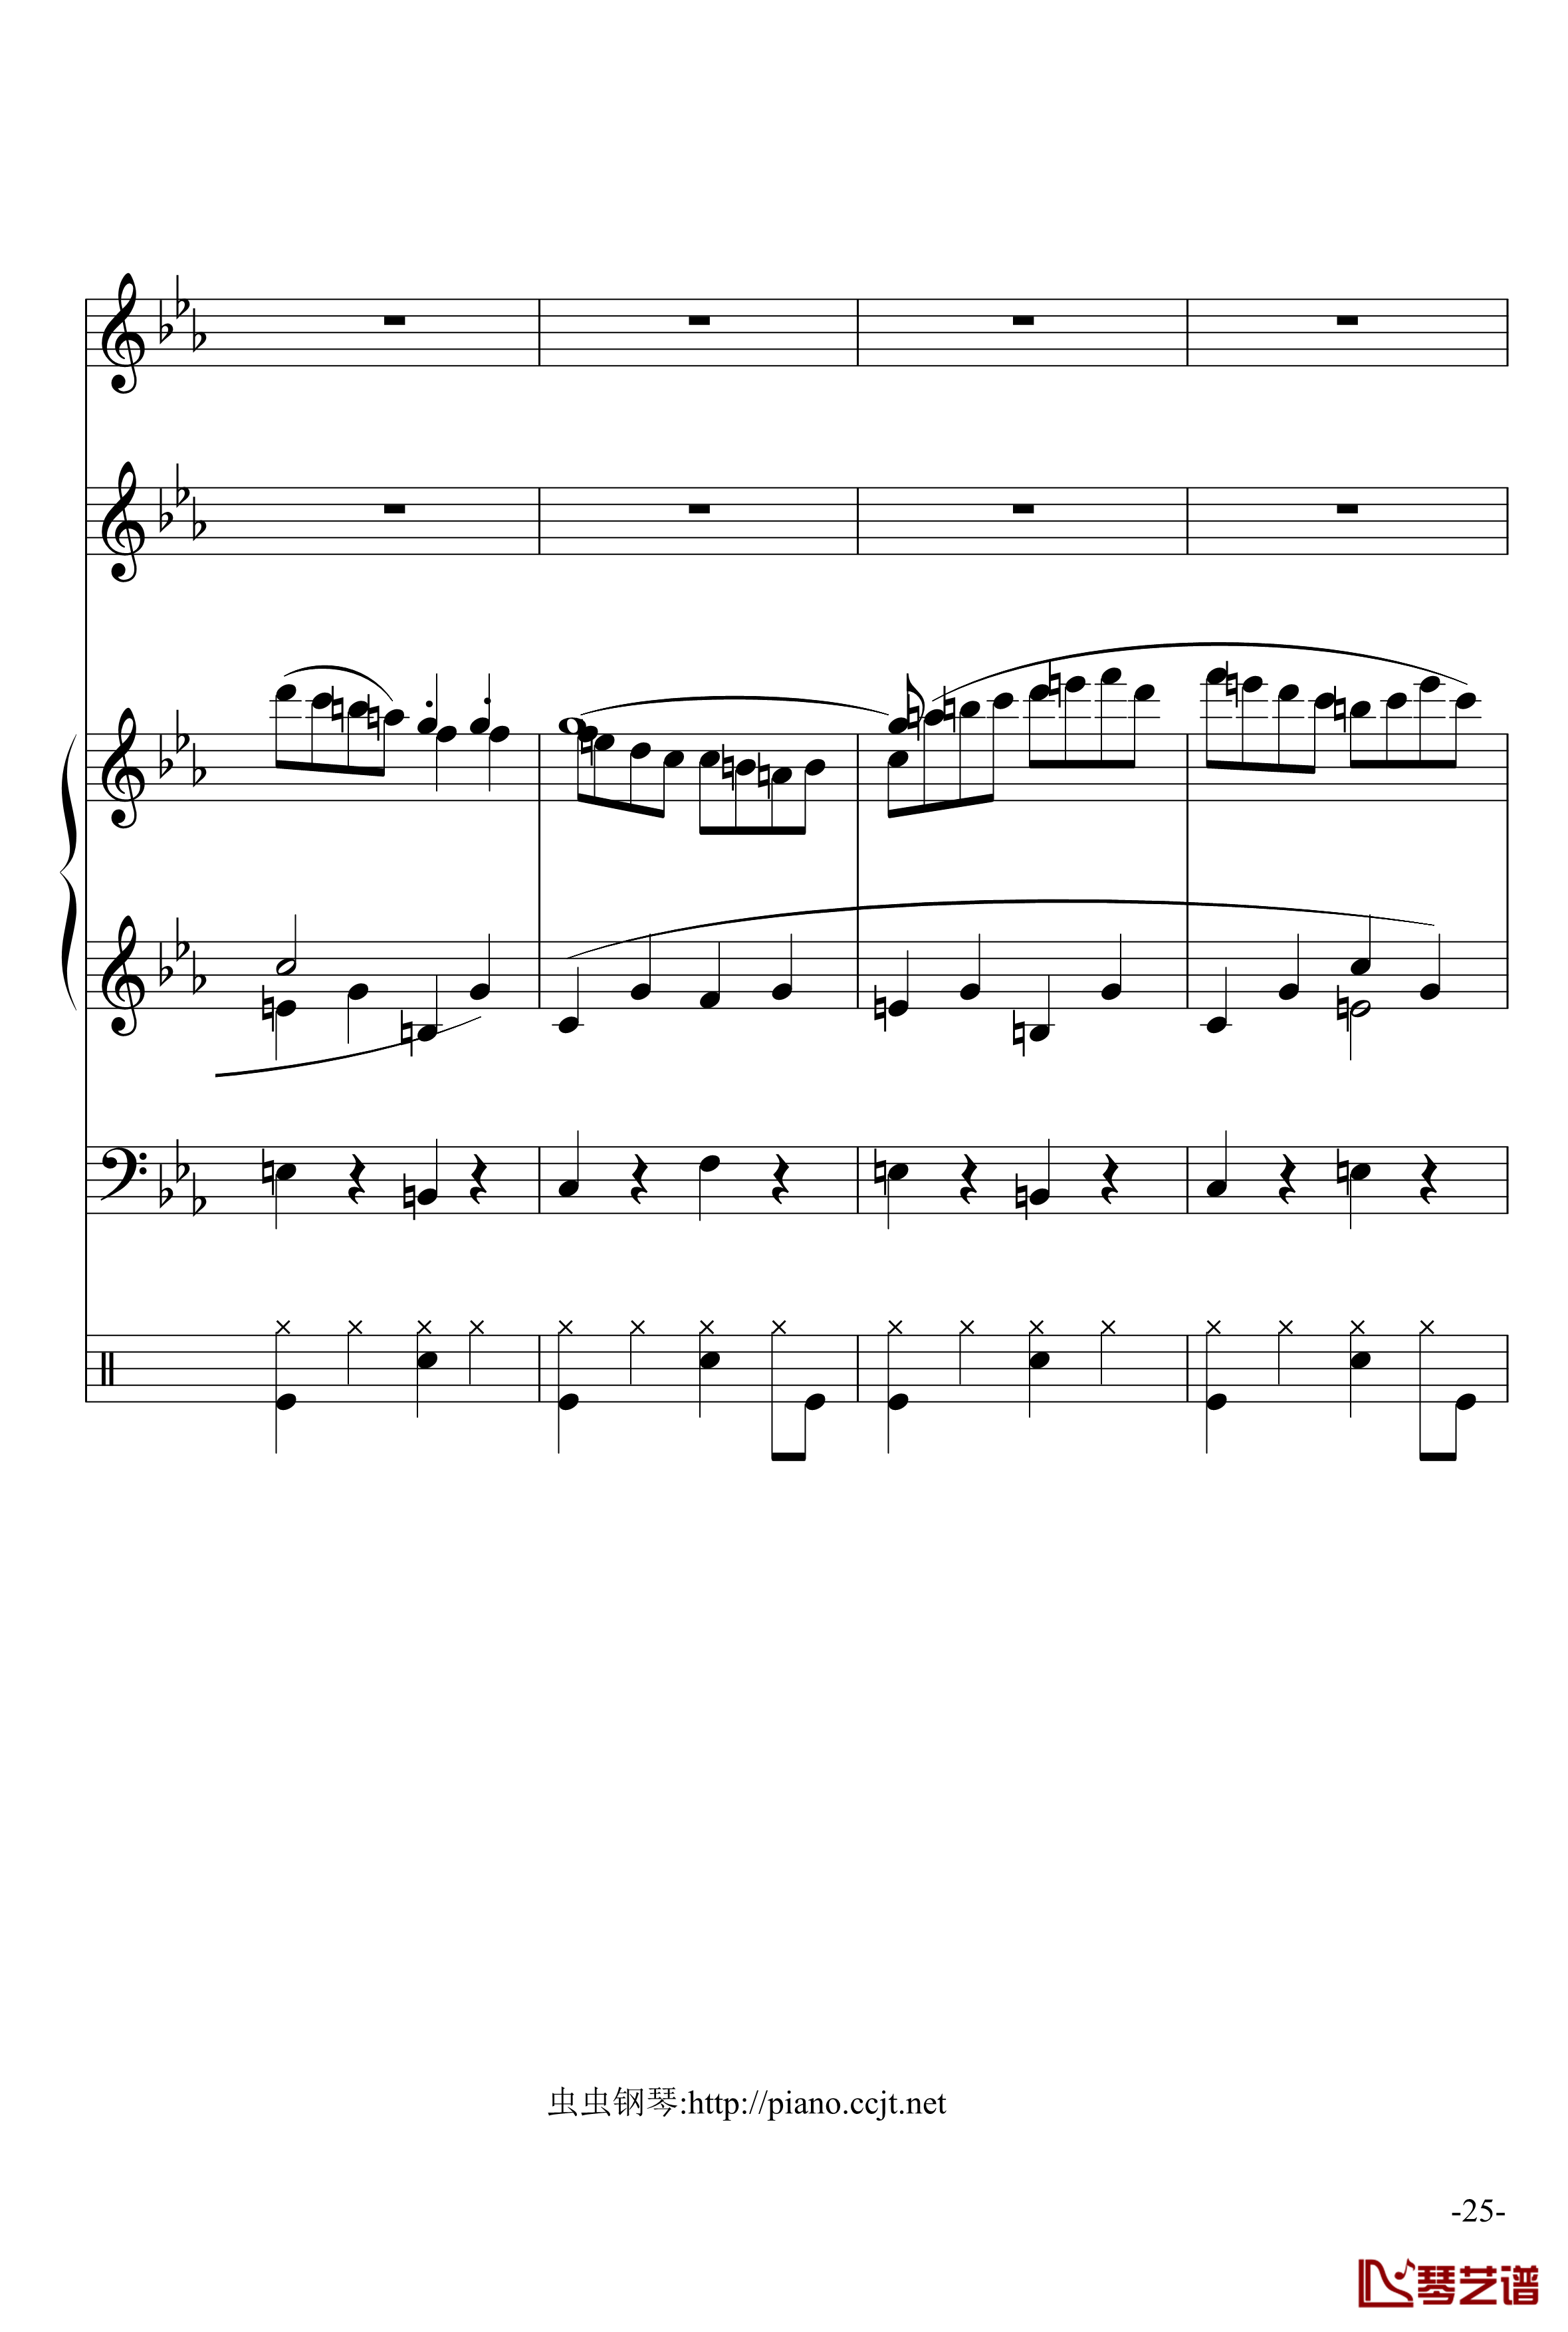 悲怆奏鸣曲钢琴谱-加小乐队-贝多芬-beethoven25